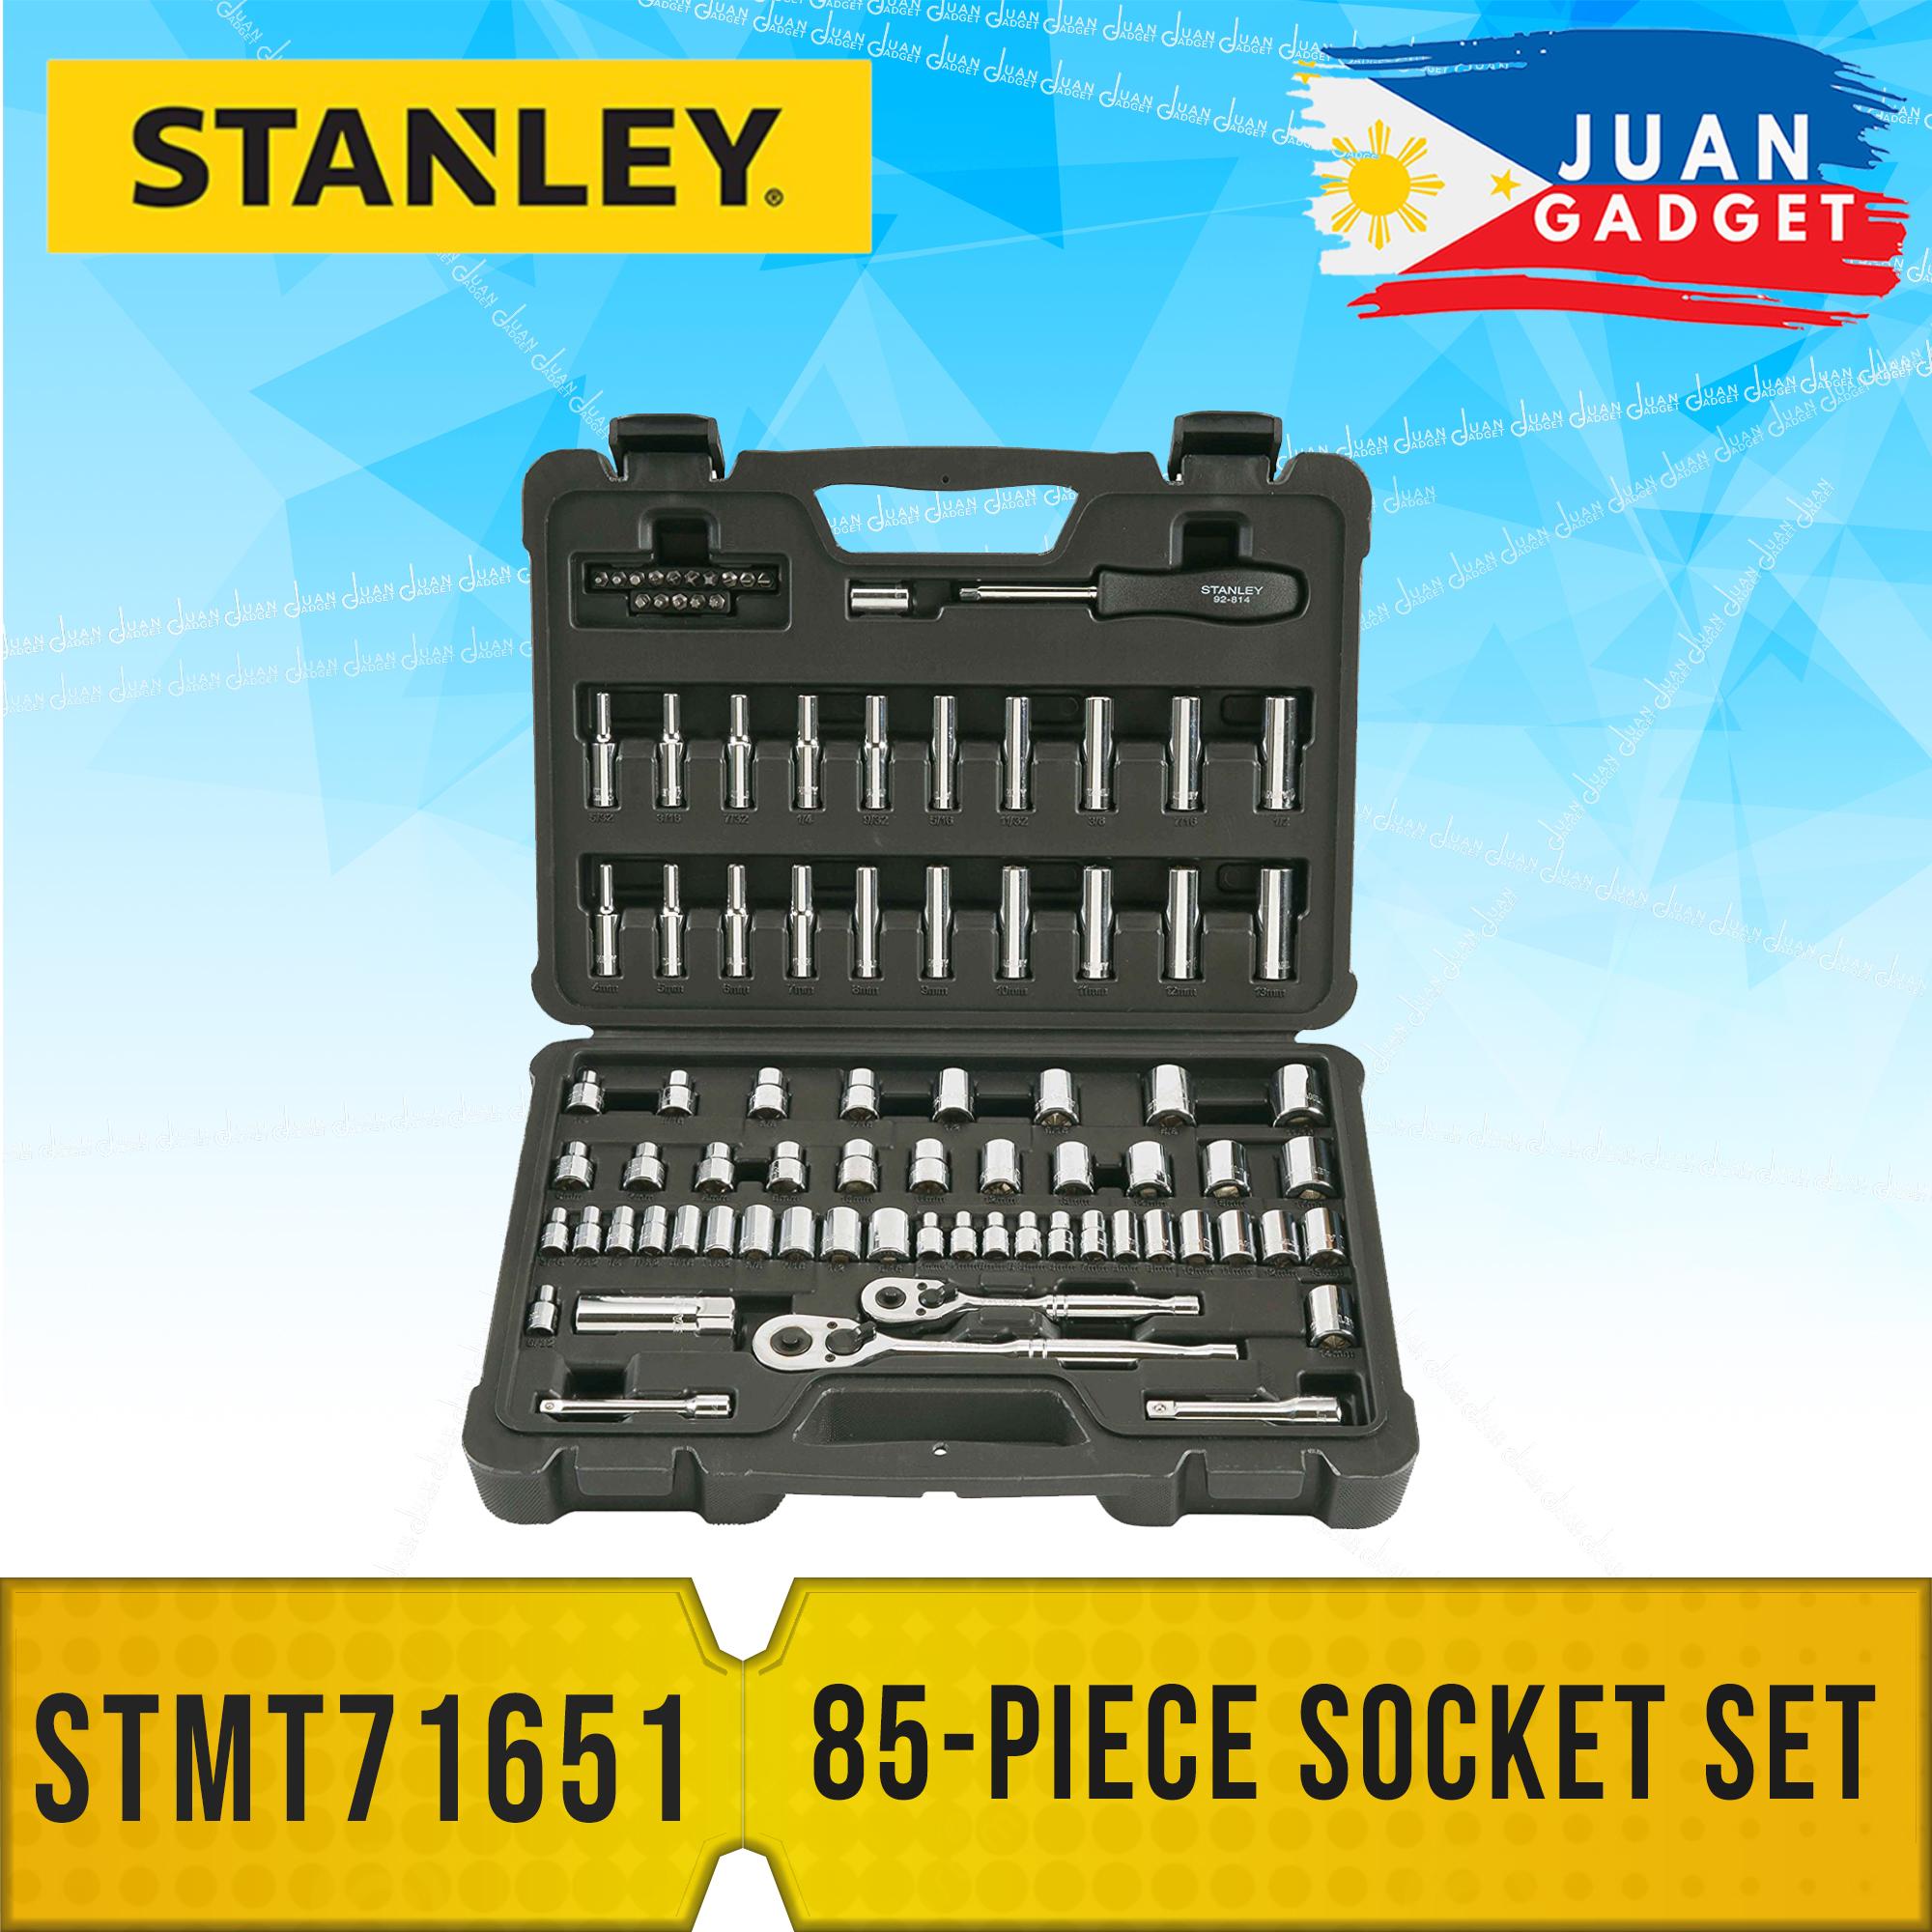 Stanley STMT71651 85-Piece Socket Wrench Tool Set Kit | JG